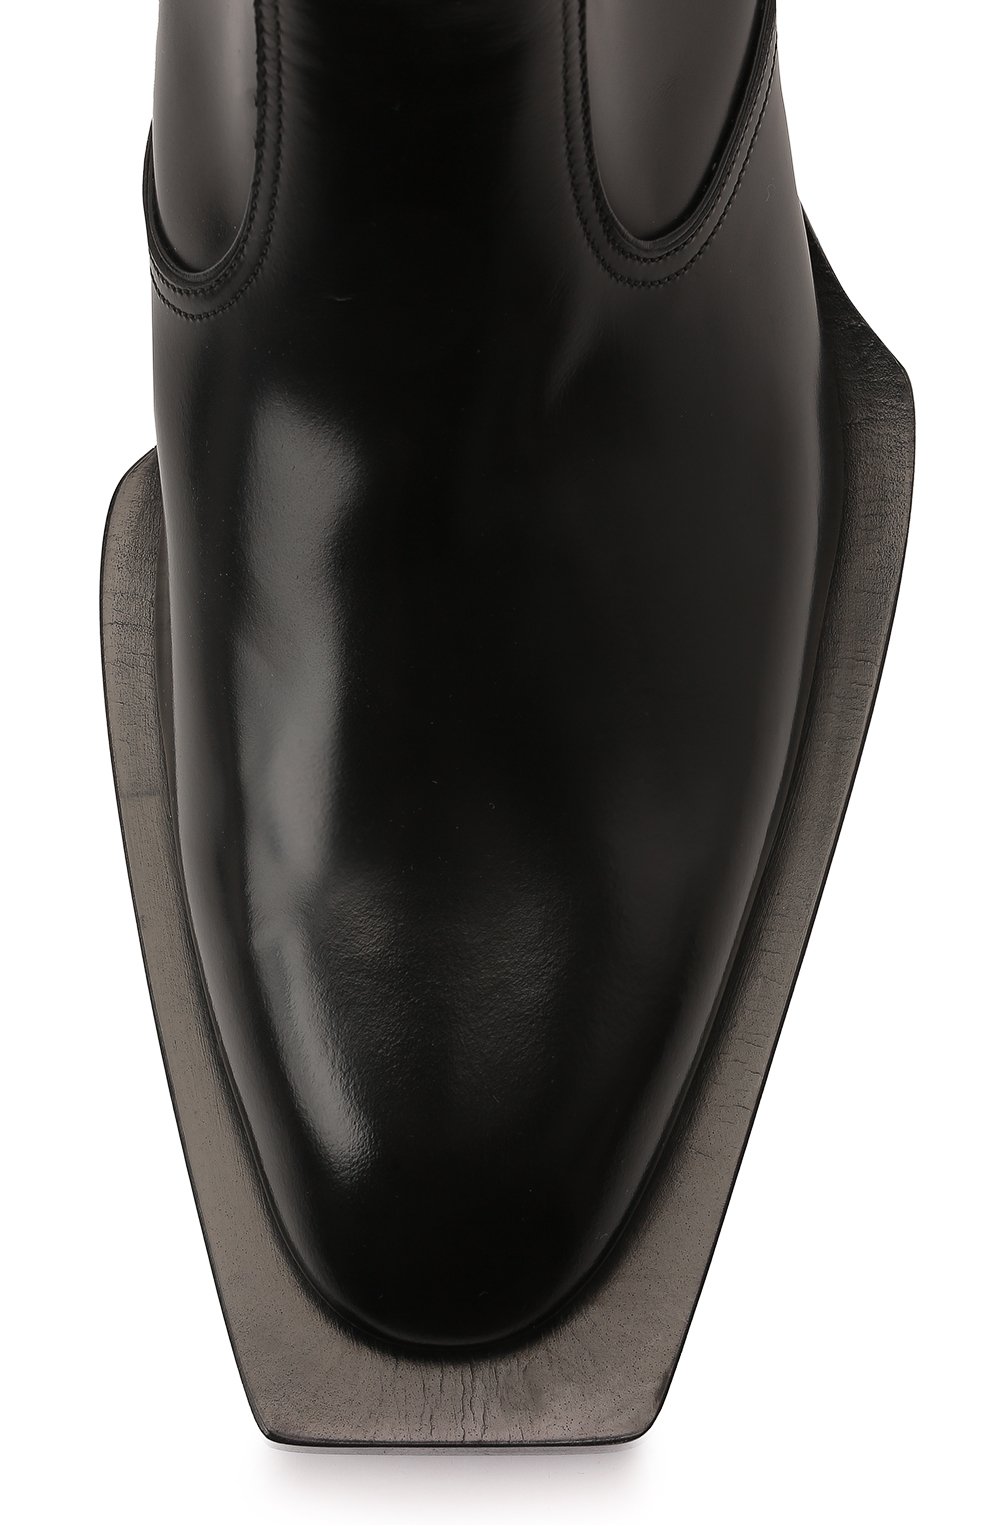 Мужские кожаные сапоги shiny tex DOLCE & GABBANA черного цвета, арт. A60434/A1203 | Фото 6 (Материал внешний: Кожа; Материал внутренний: Натуральная кожа; Материал утеплителя: Без утеплителя; Мужское Кросс-КТ: Казаки-обувь, Сапоги-обувь; Длина стельки: 26,1, 26,9, 27,3, 27,7, 28,1, 28,5)